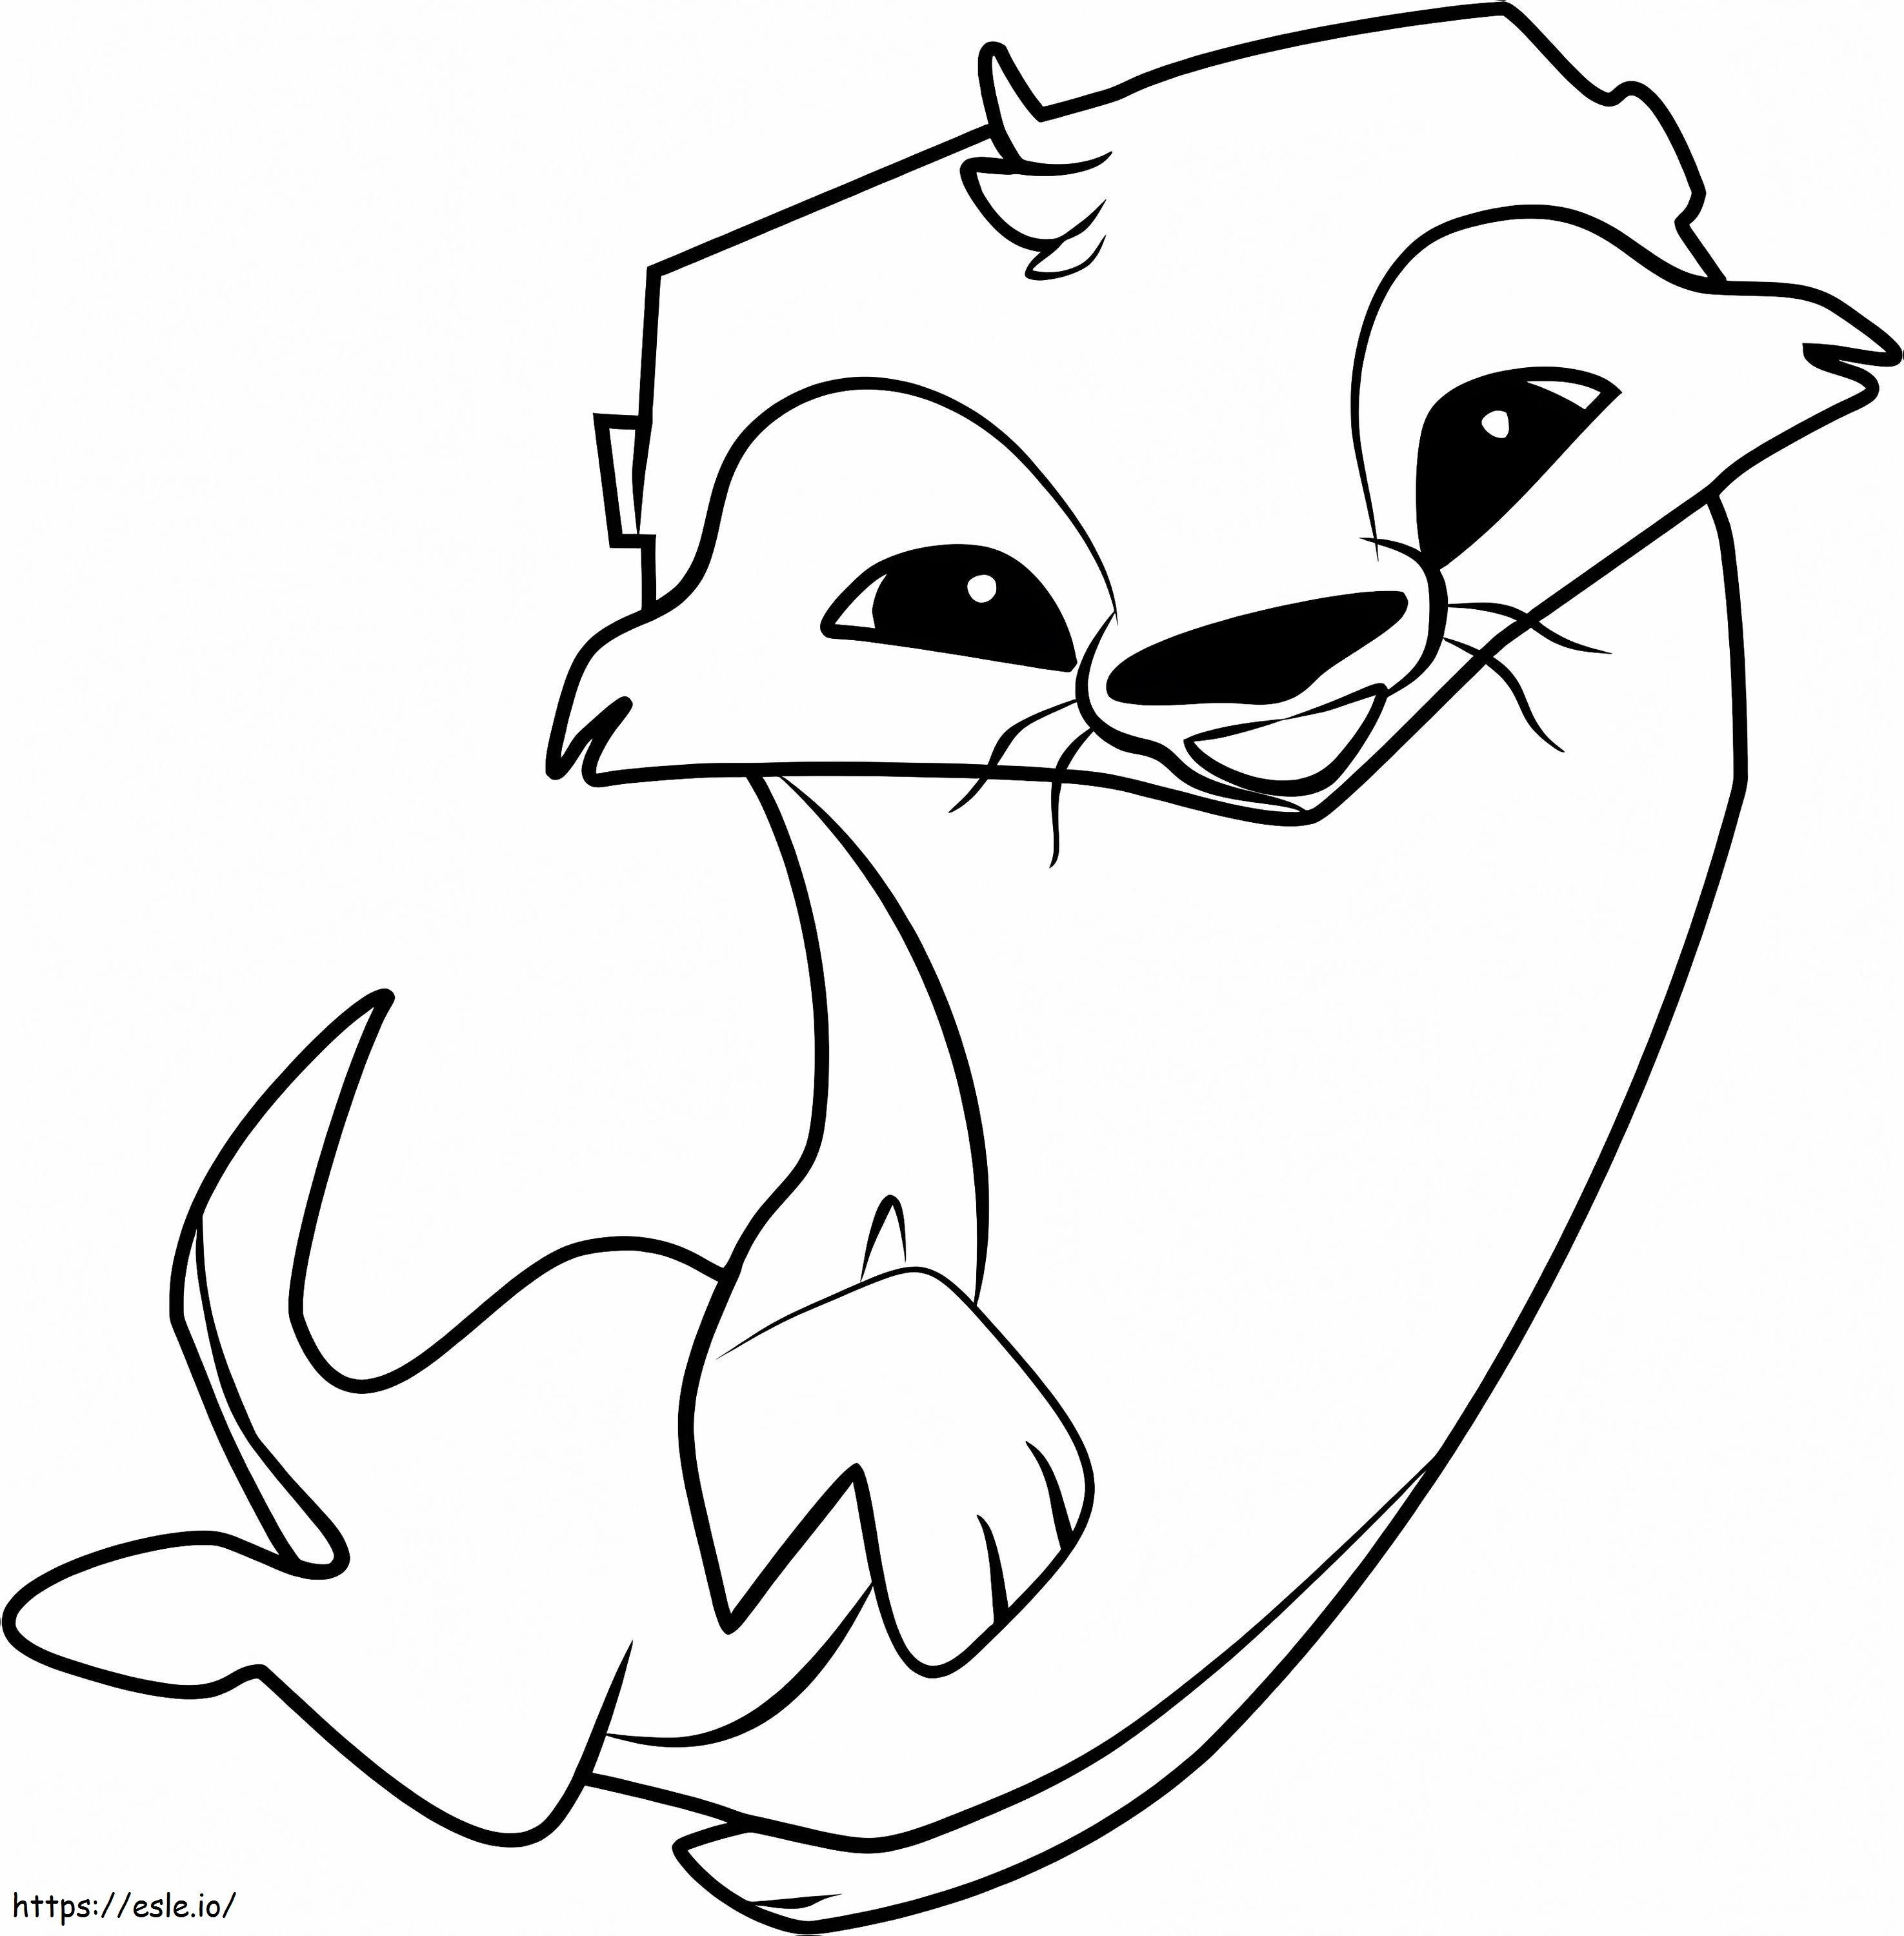 Otter-Zeichnung ausmalbilder